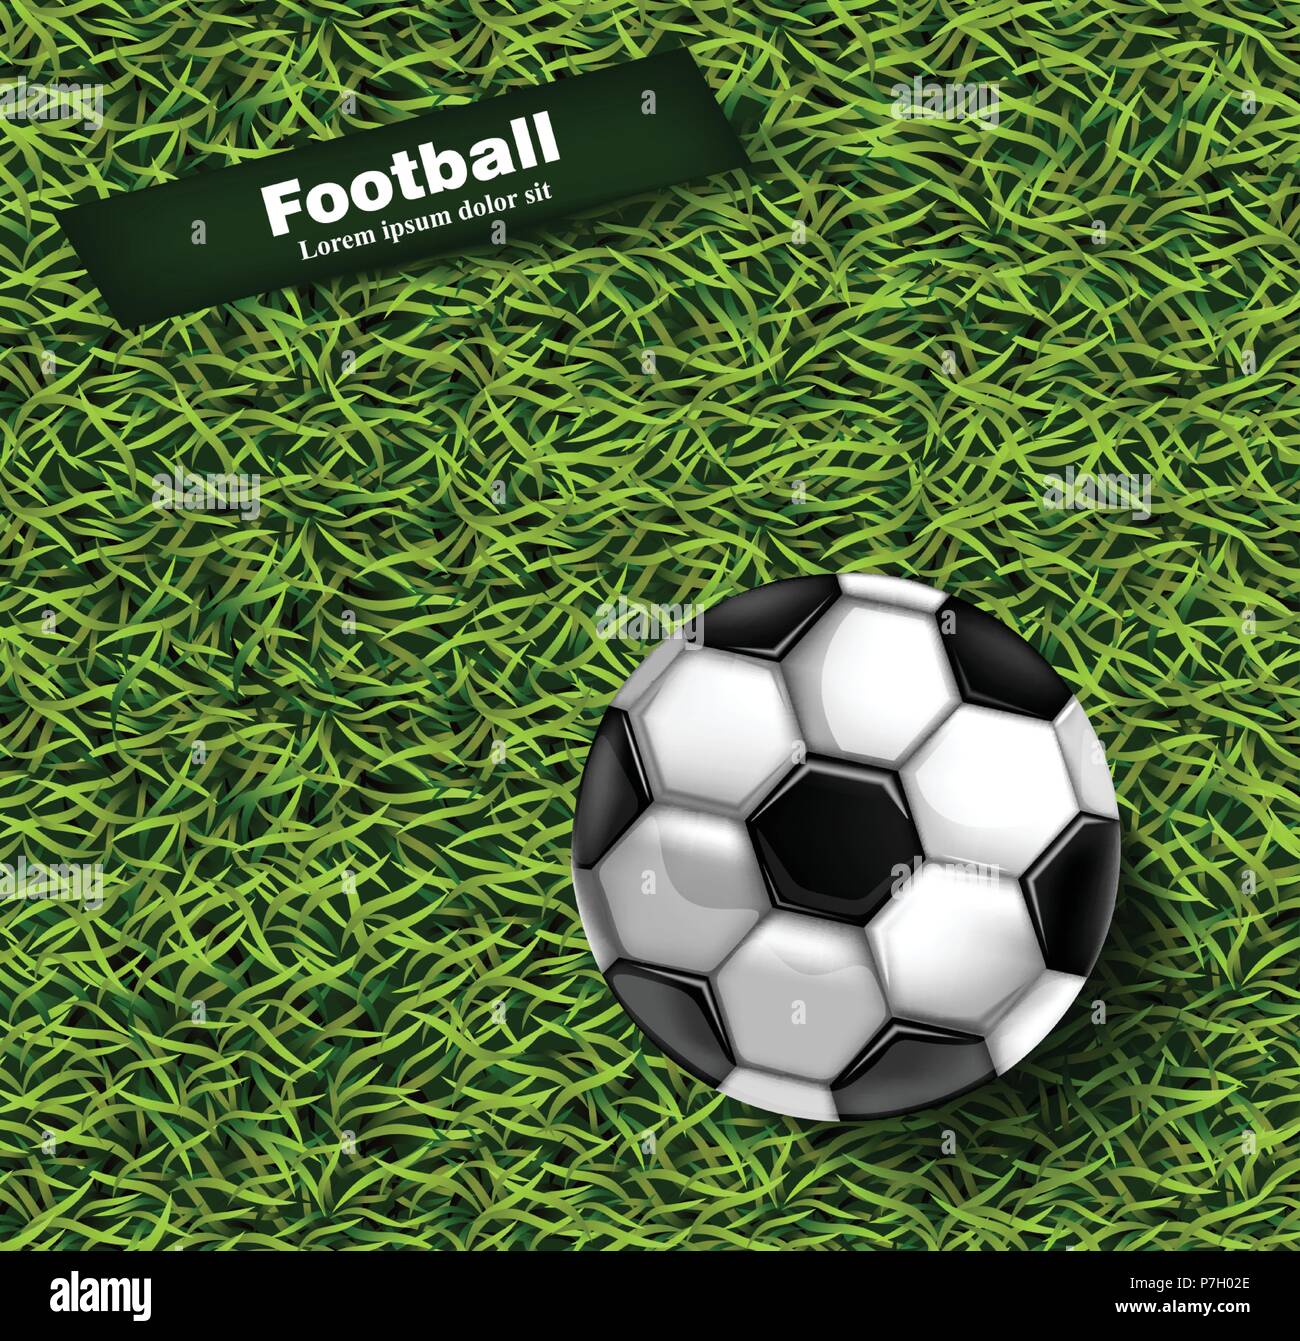 Fußball-grünem Gras Hintergrund Vektor. Realistische 3D-Kugel ausführliche Darstellung Stock Vektor